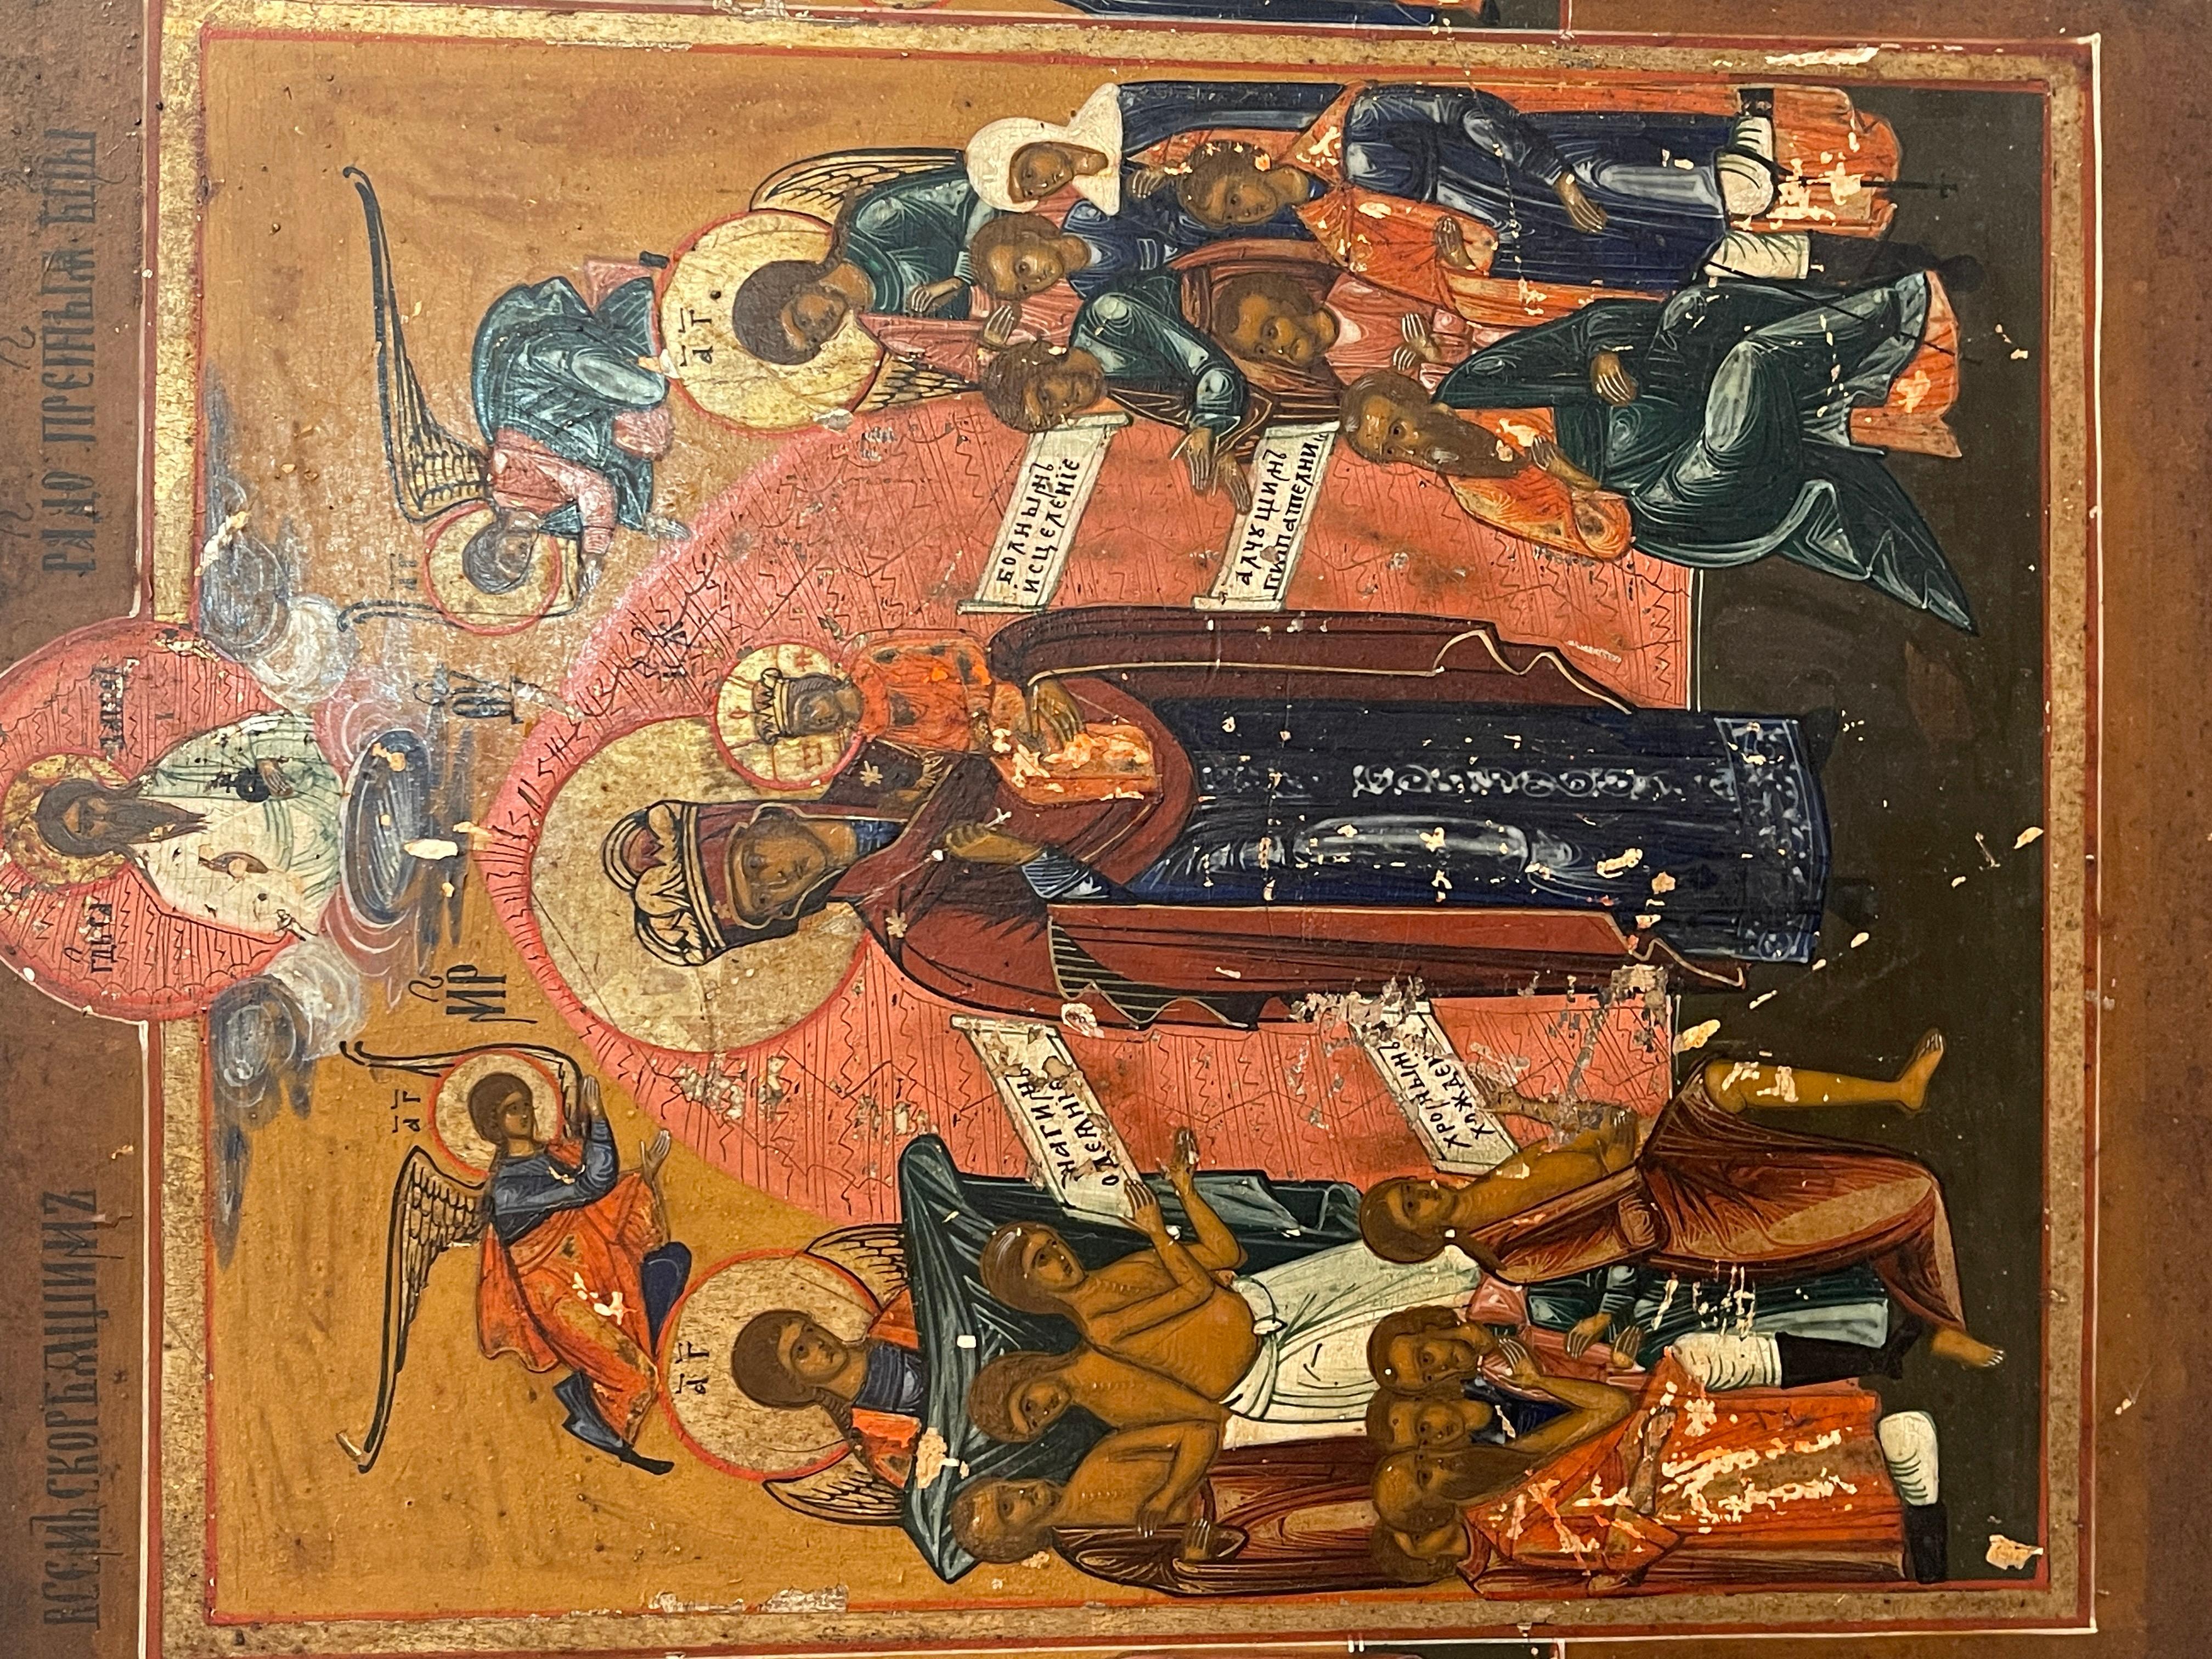 Antike Ikone von hoher Kunstfertigkeit aus dem 19. Jahrhundert, russisch. 
Die Ikone stellt die Madonna mit dem Kind in der Mitte dar, umgeben von Engeln und Aposteln.
In gutem Zustand, wie auf den Fotos zu sehen, einige Mängel und altersbedingte